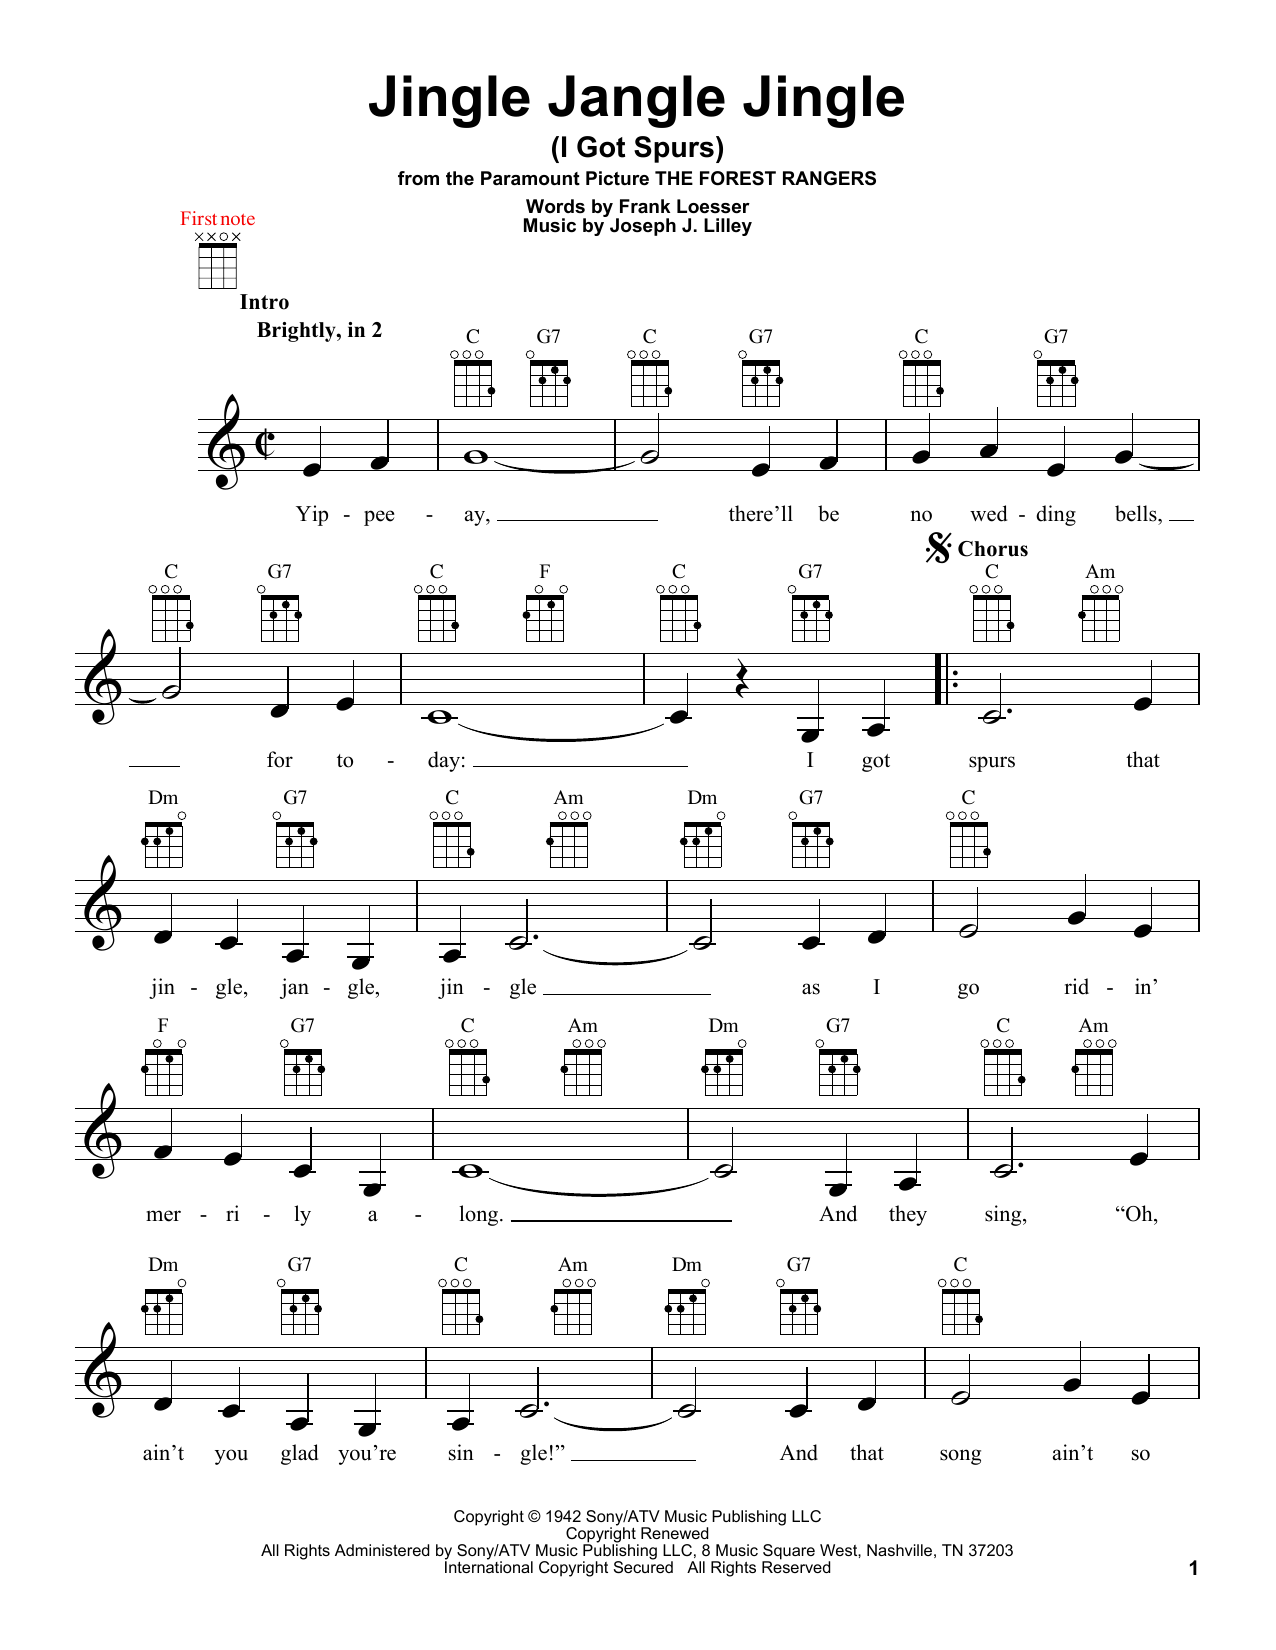 Frank Loesser Jingle Jangle Jingle (I Got Spurs) Sheet Music Notes & Chords for Ukulele - Download or Print PDF